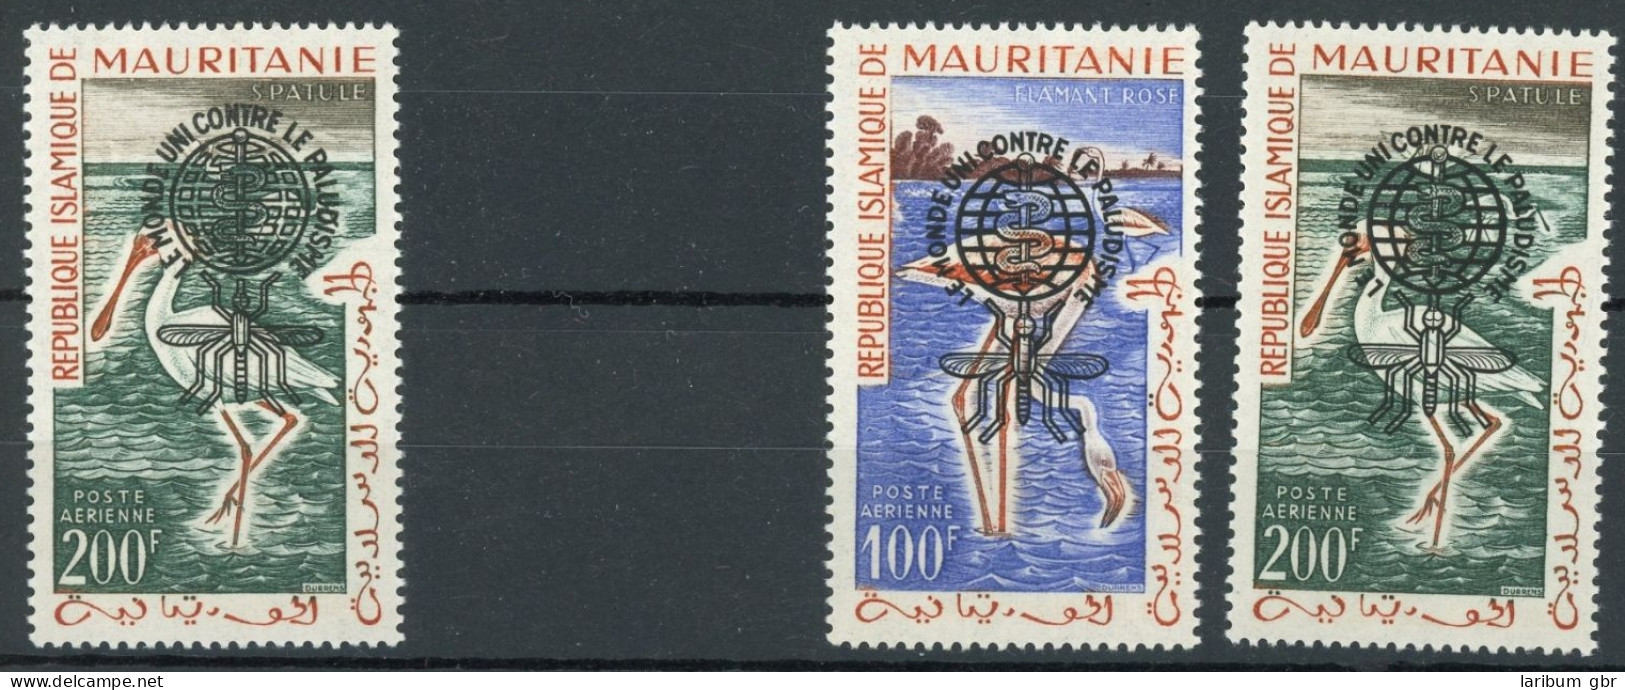 Mauretanien VIII Type I, VII-VIII Type II Postfrisch Malaria #GL693 - Mauritania (1960-...)